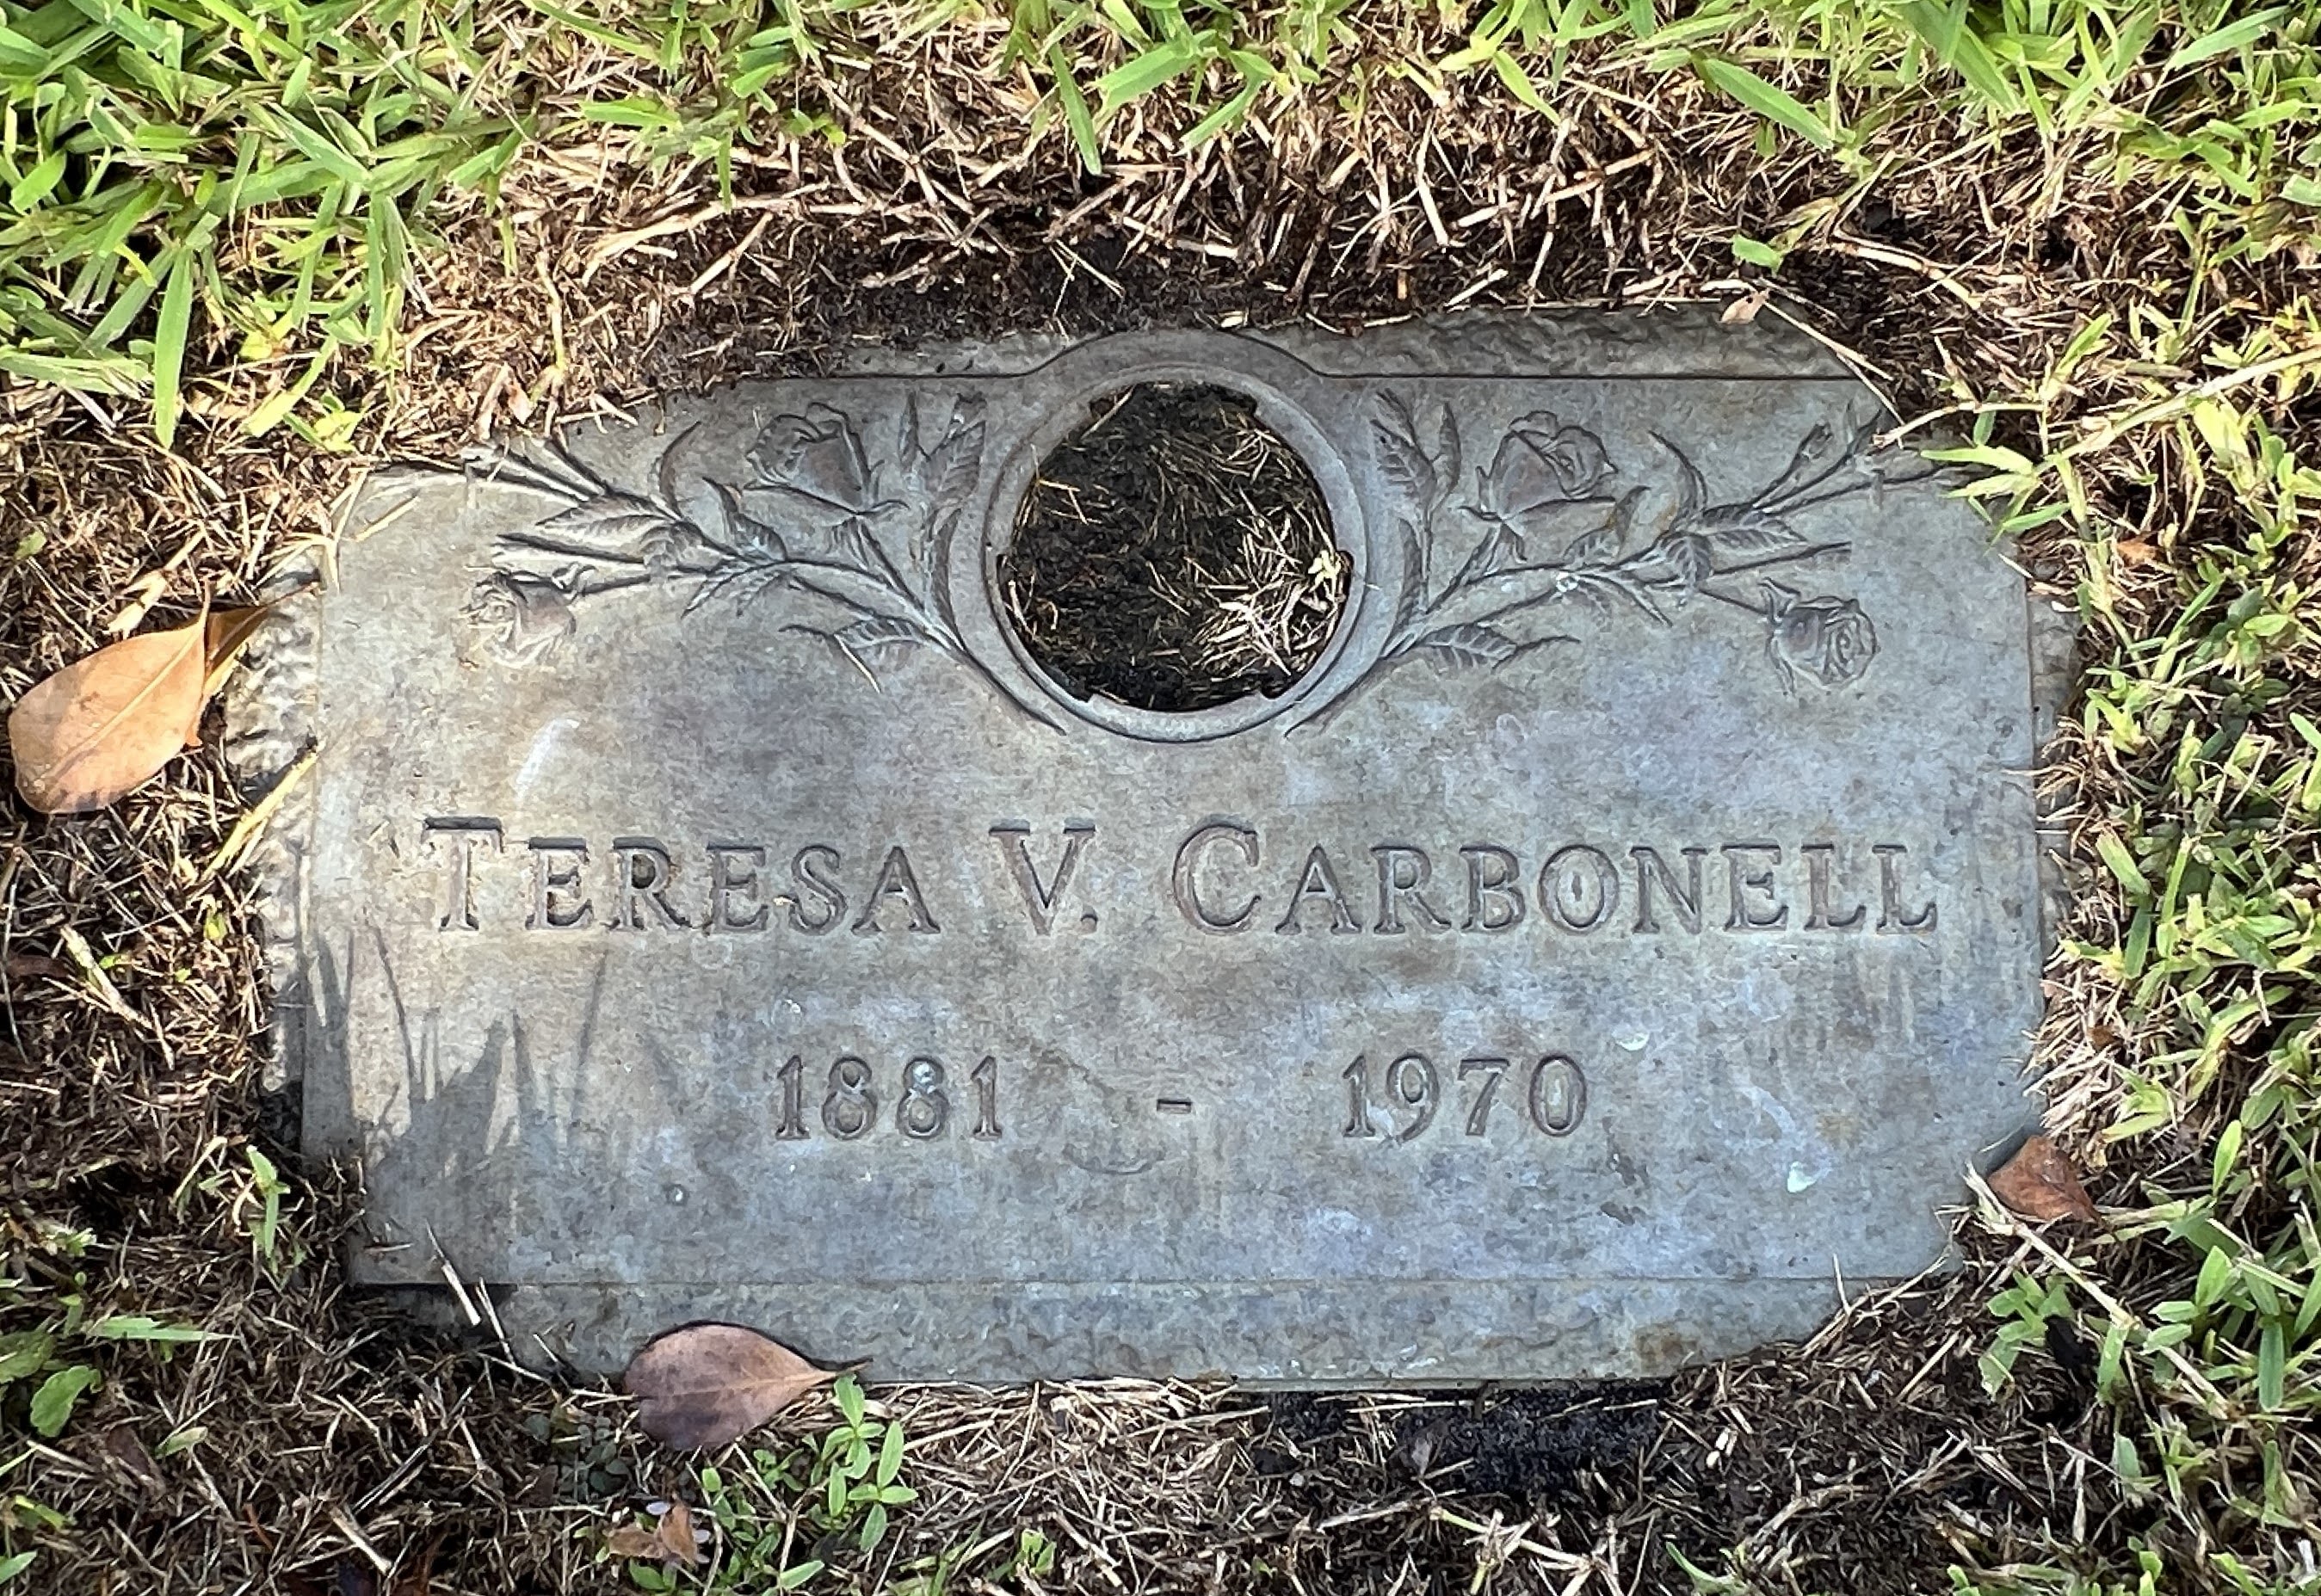 Teresa V Carbonell